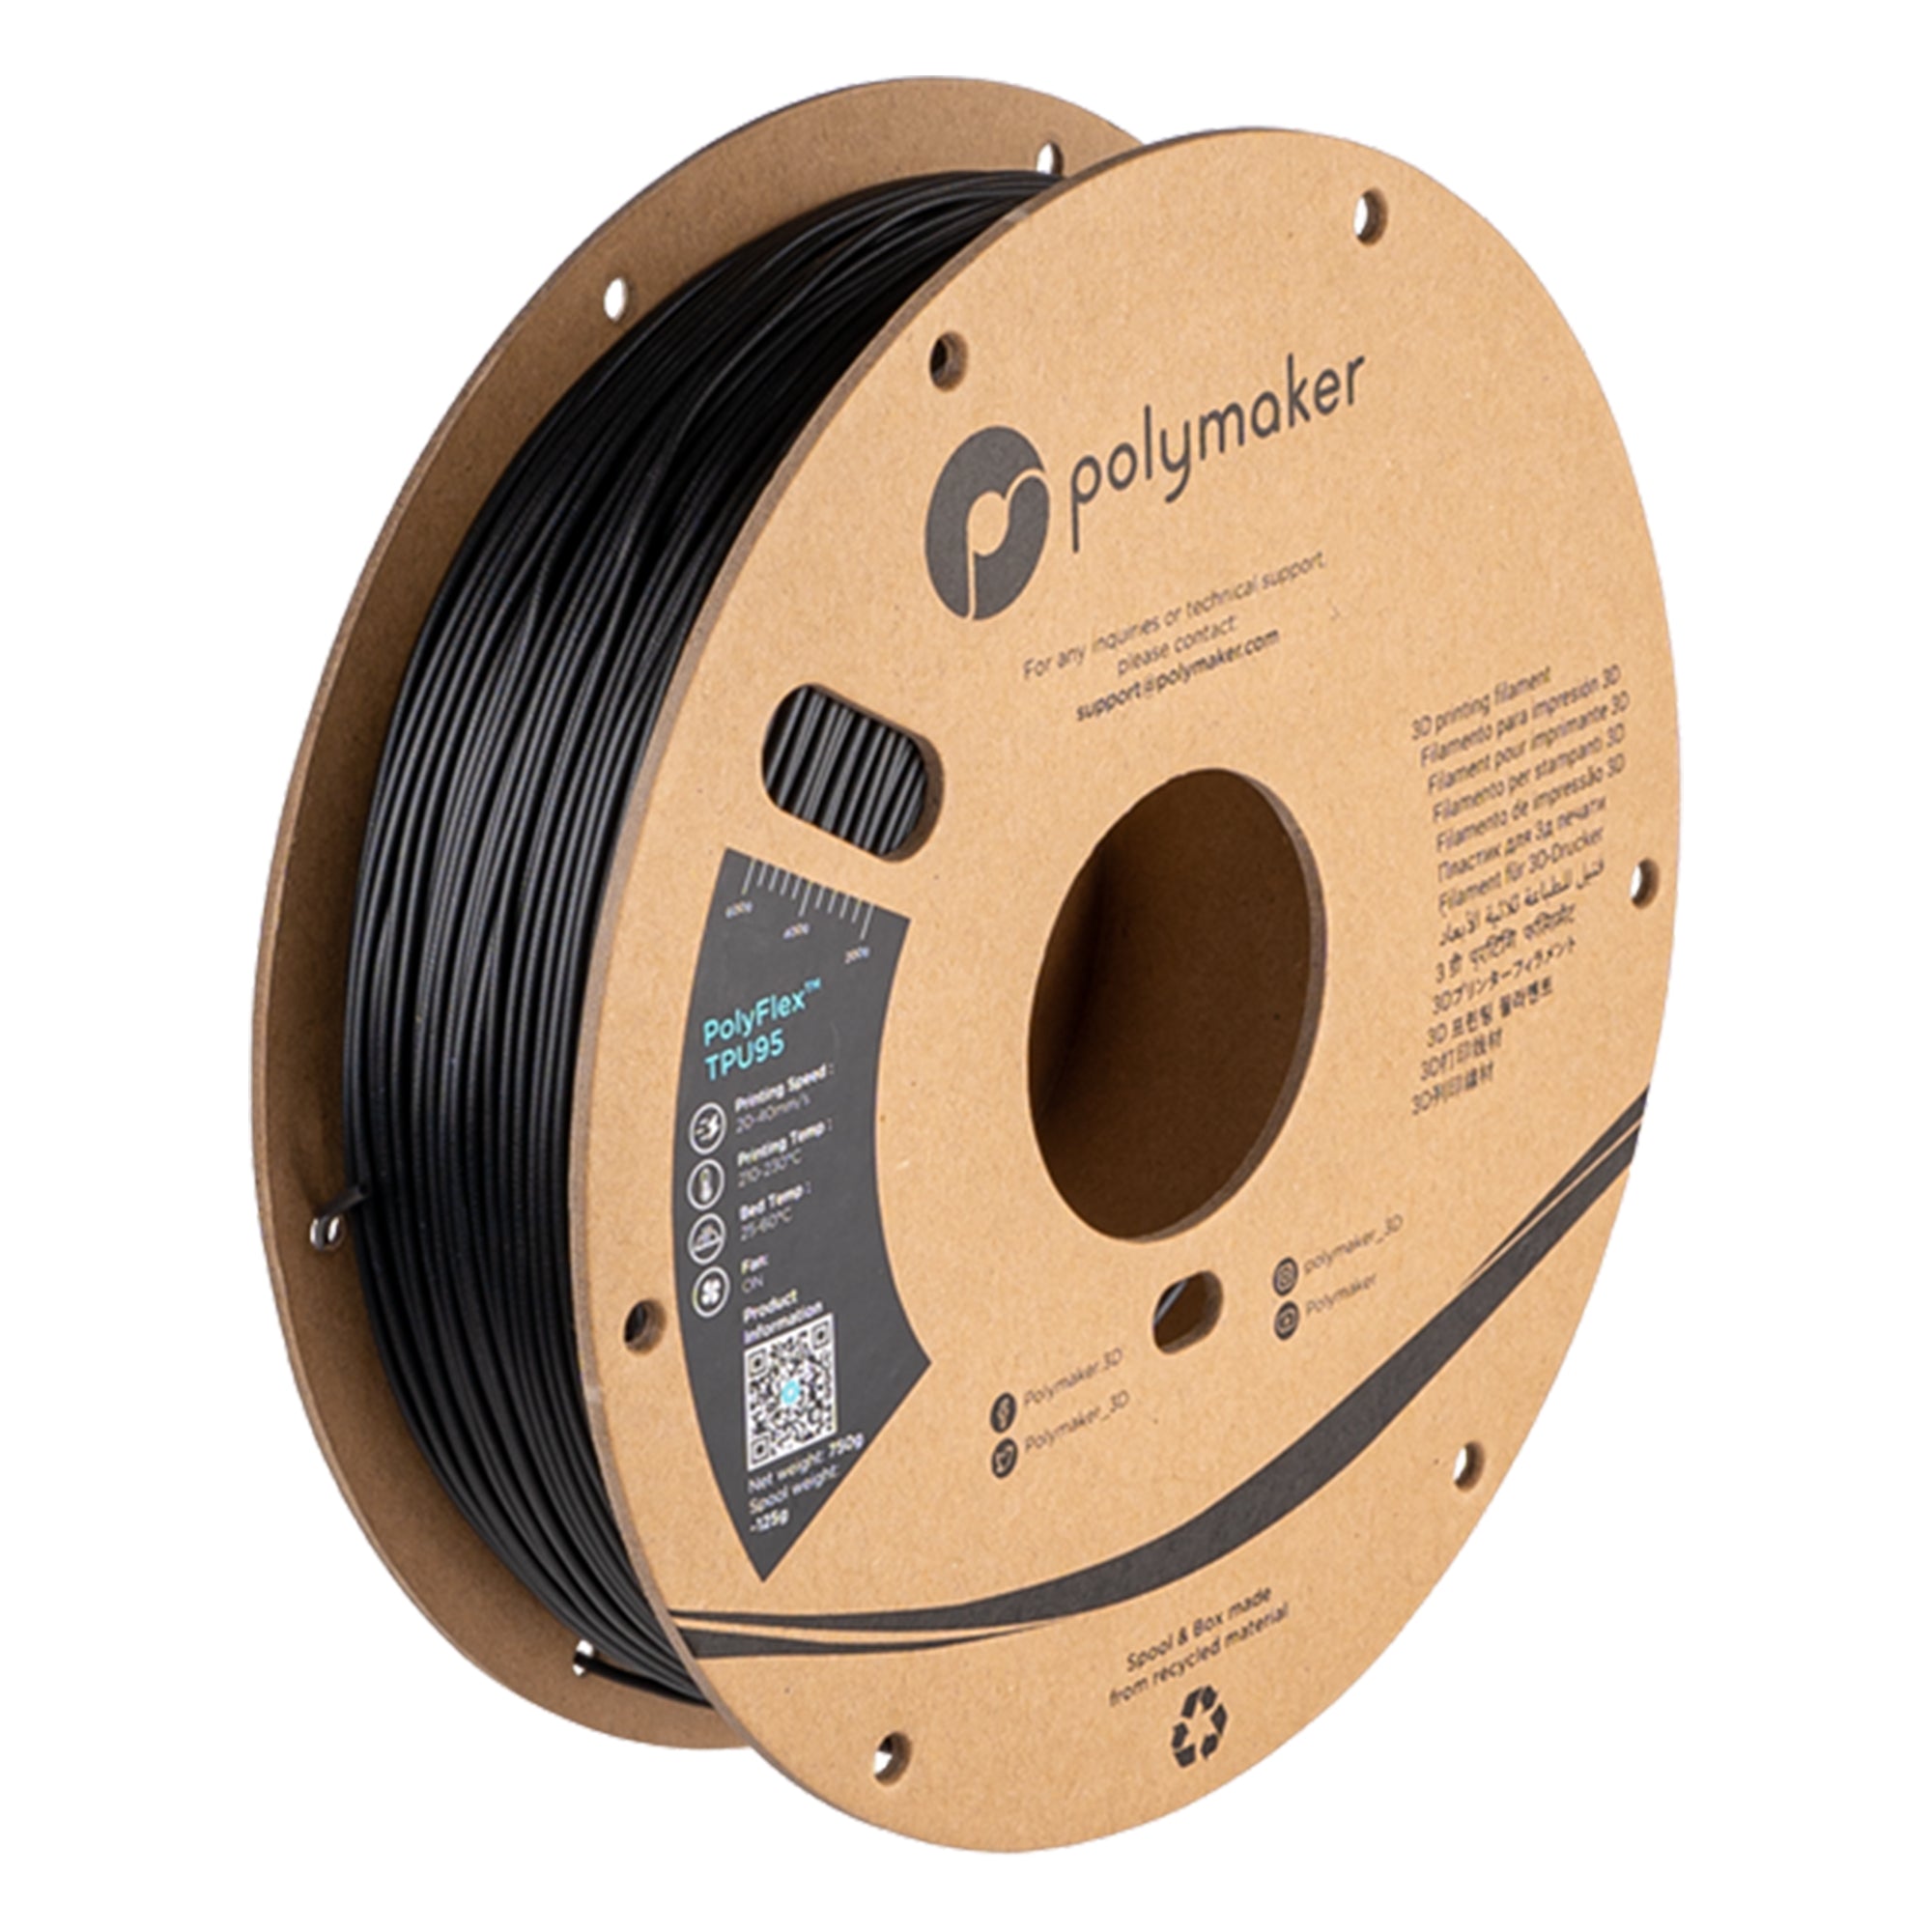 Polymaker PolyFlex TPU95 1.75mm Filament 750g